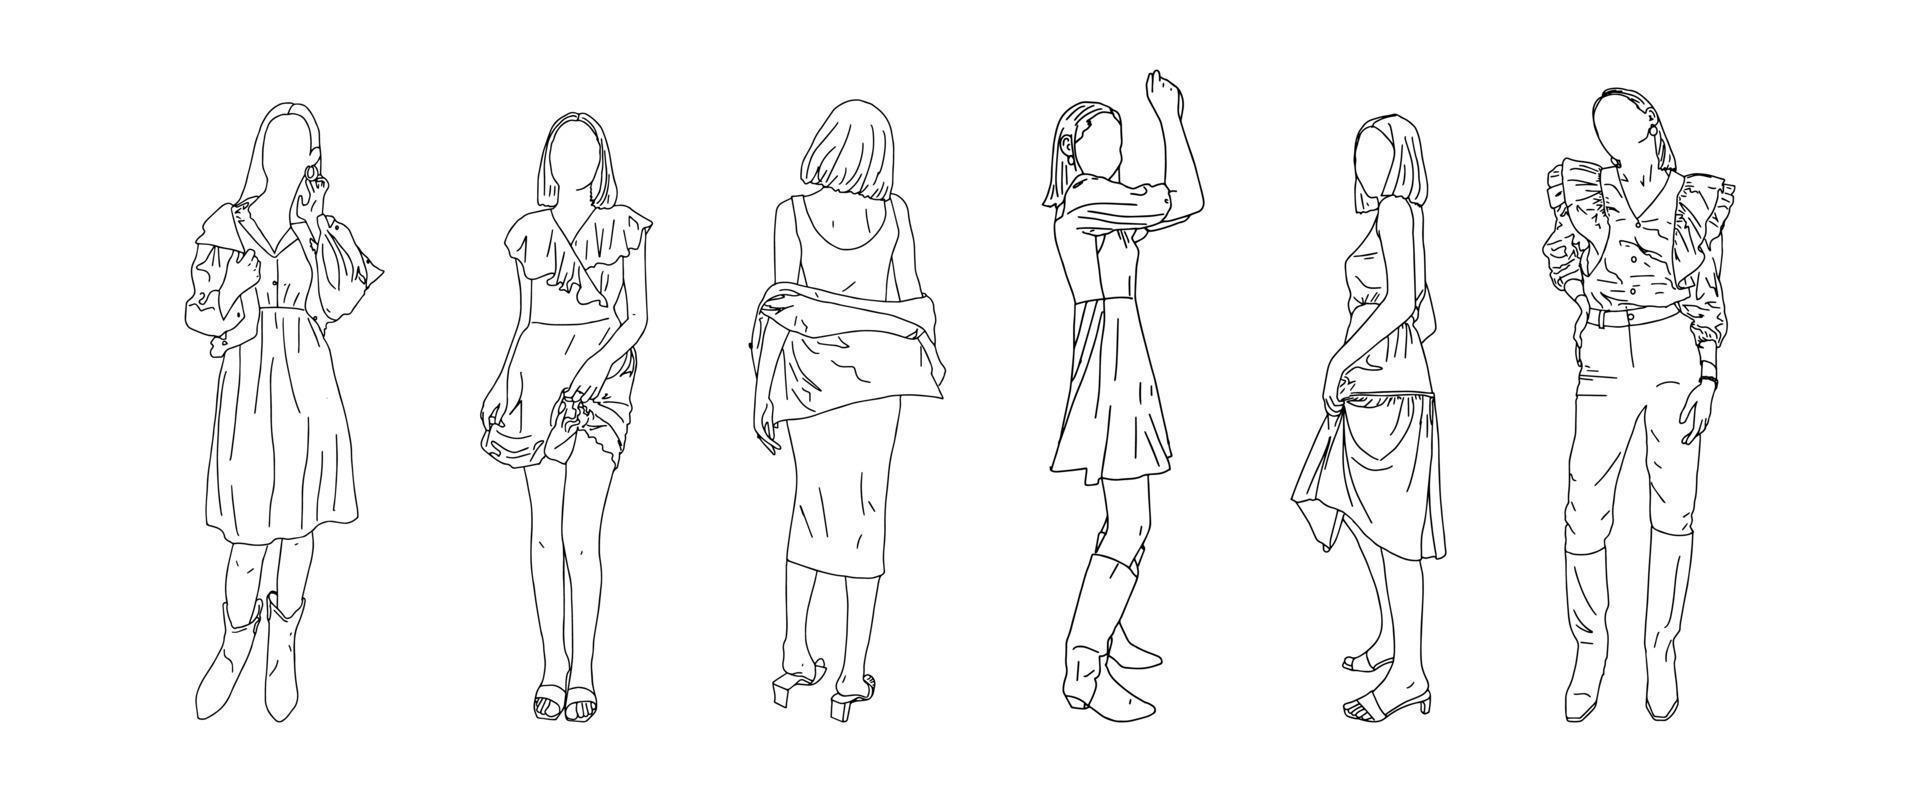 dibujadas en un estilo lineal de chicas adolescentes. ilustración vectorial vector